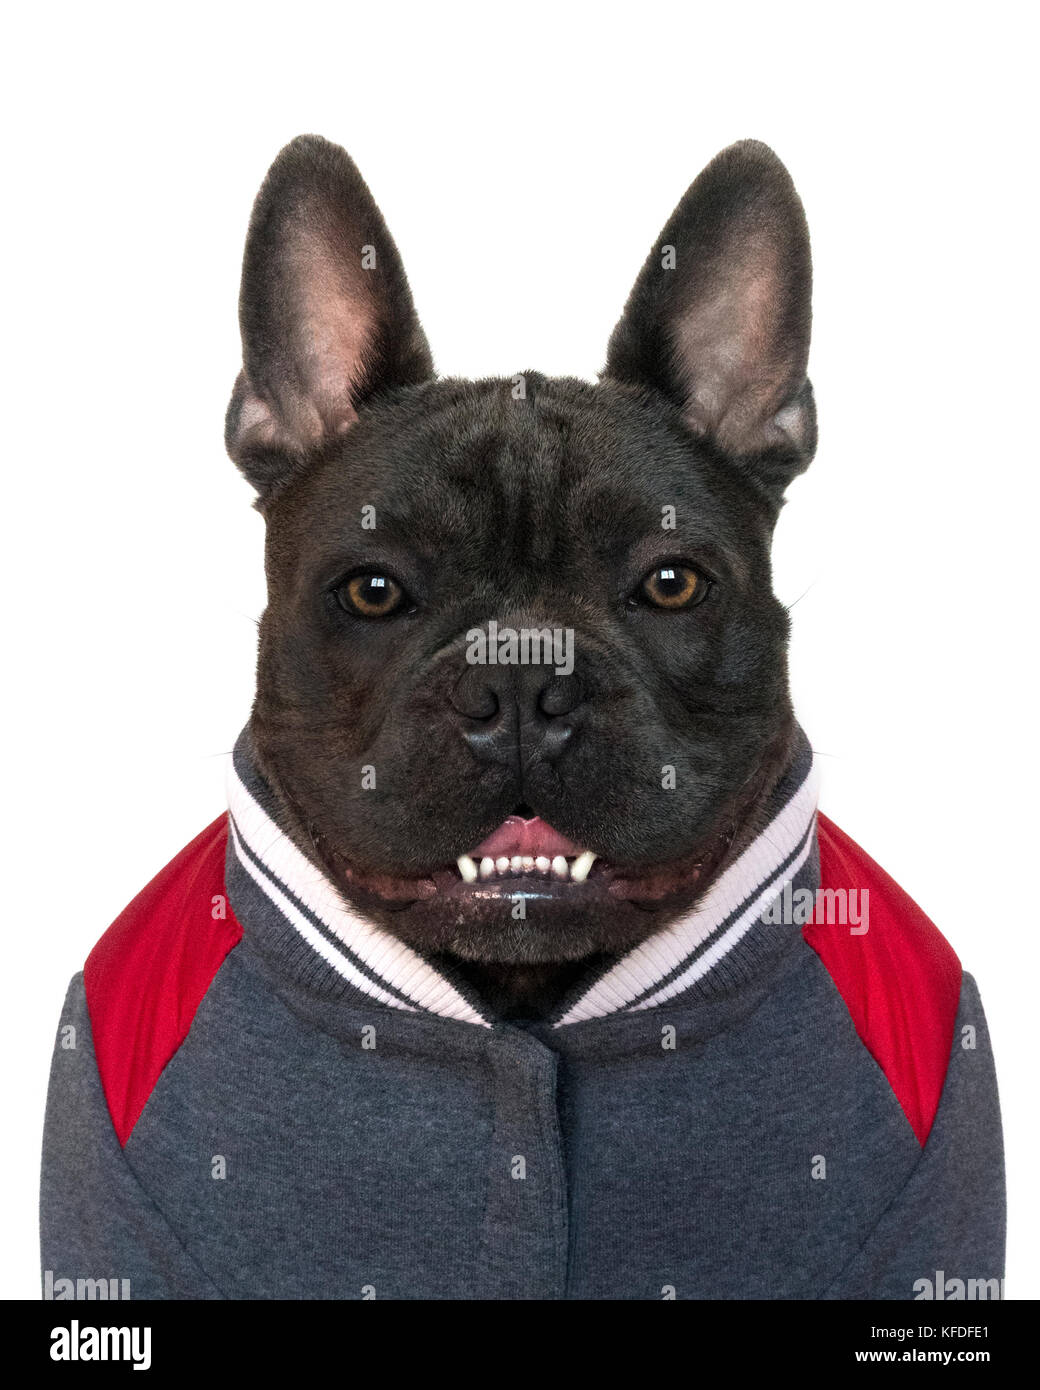 Mascota mugshot tipo retrato, la cabeza y los hombros de un bulldog francés azul vestido de college high school de deporte, sobre un fondo blanco aislado, Foto de stock